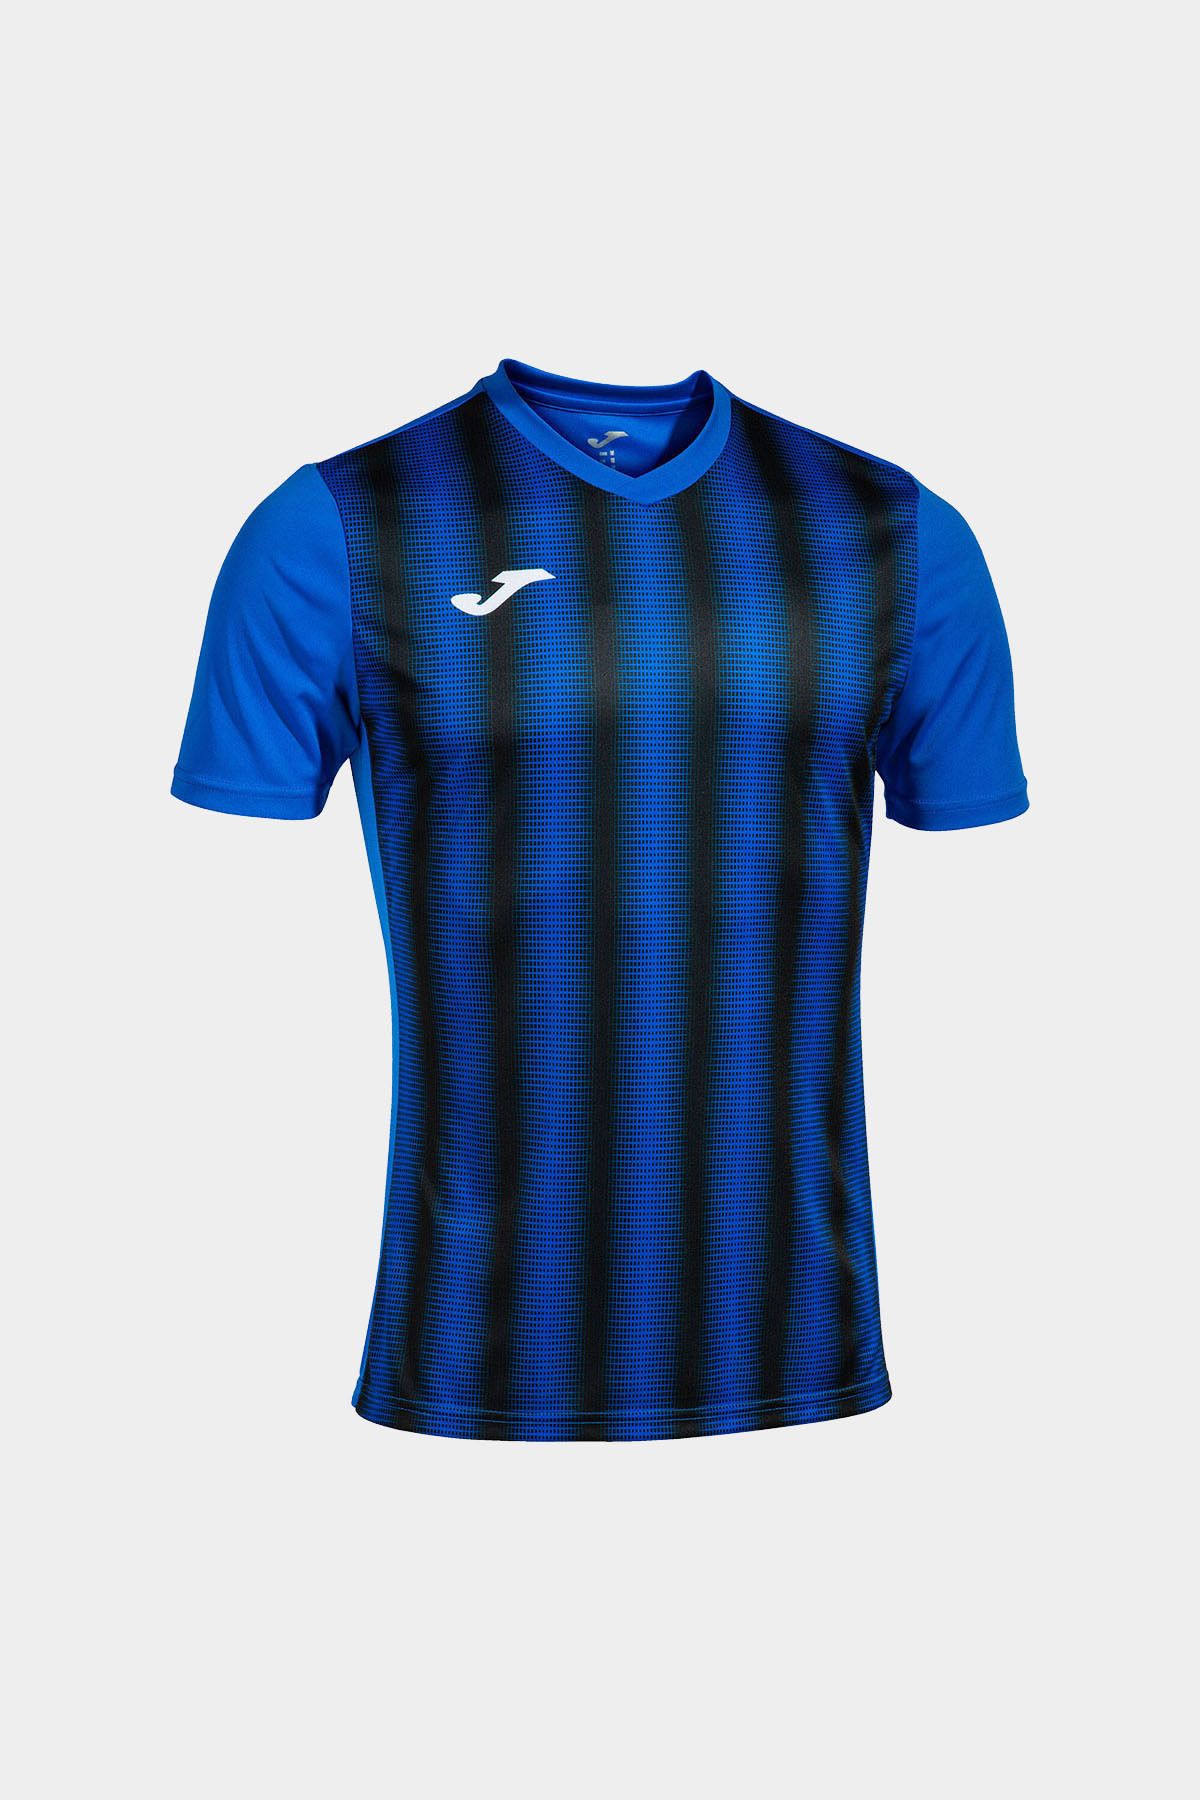 Joma Erkek Futbol Maç Forma Inter Short Sleeve Royal Black 102807.701